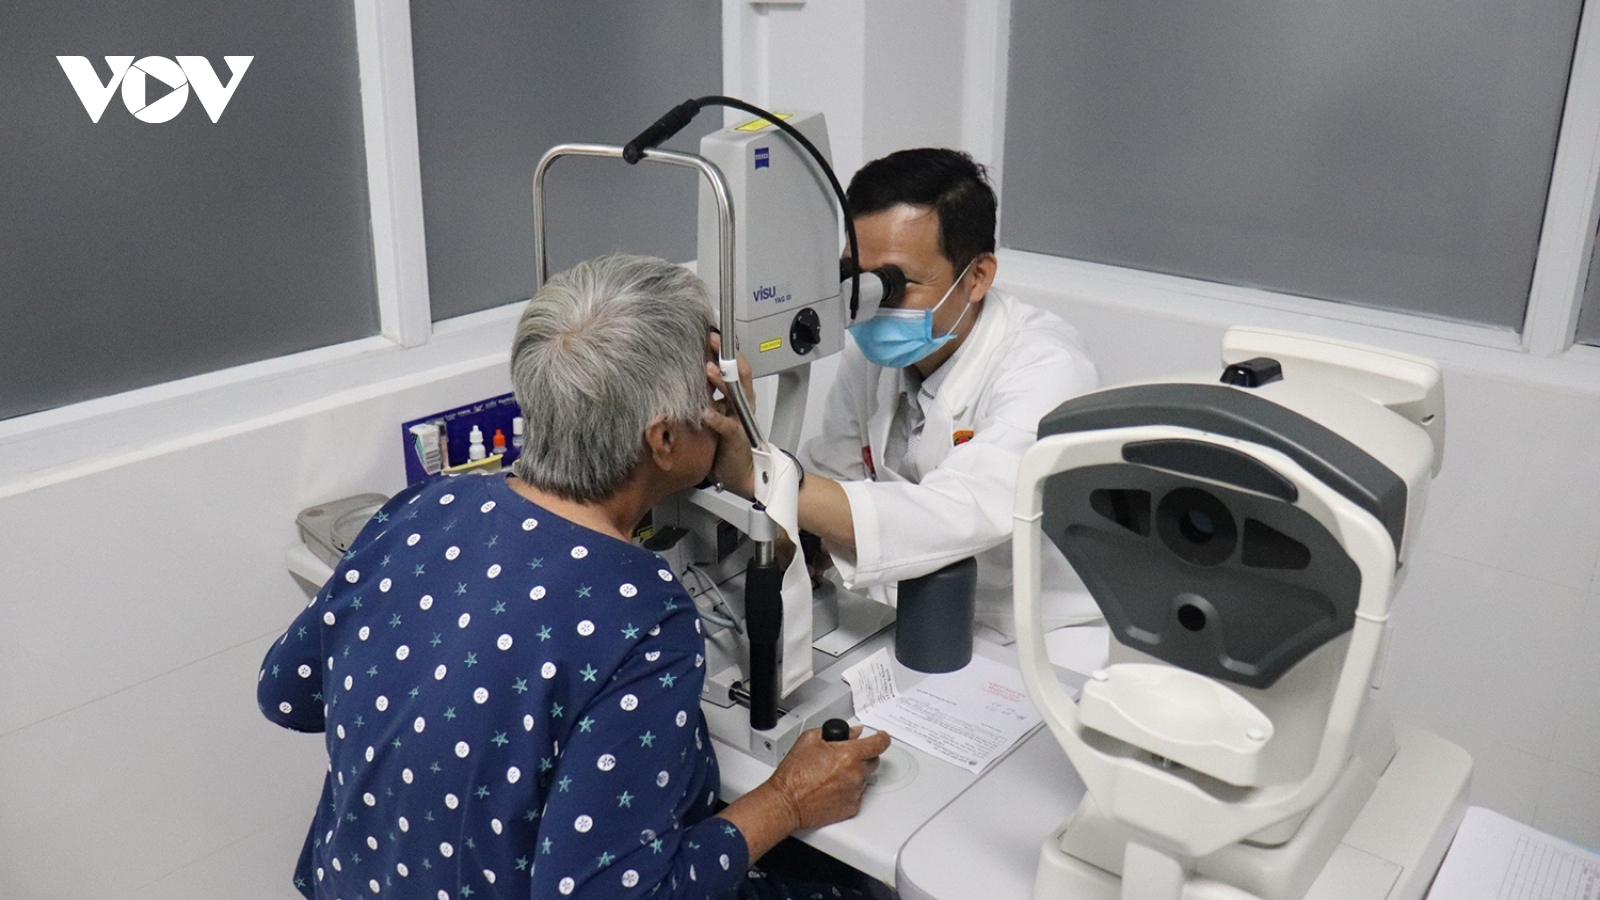 Bác sĩ quân y Huỳnh Hữu Nguyên - "cứu tinh” của hàng nghìn bệnh nhân về mắt